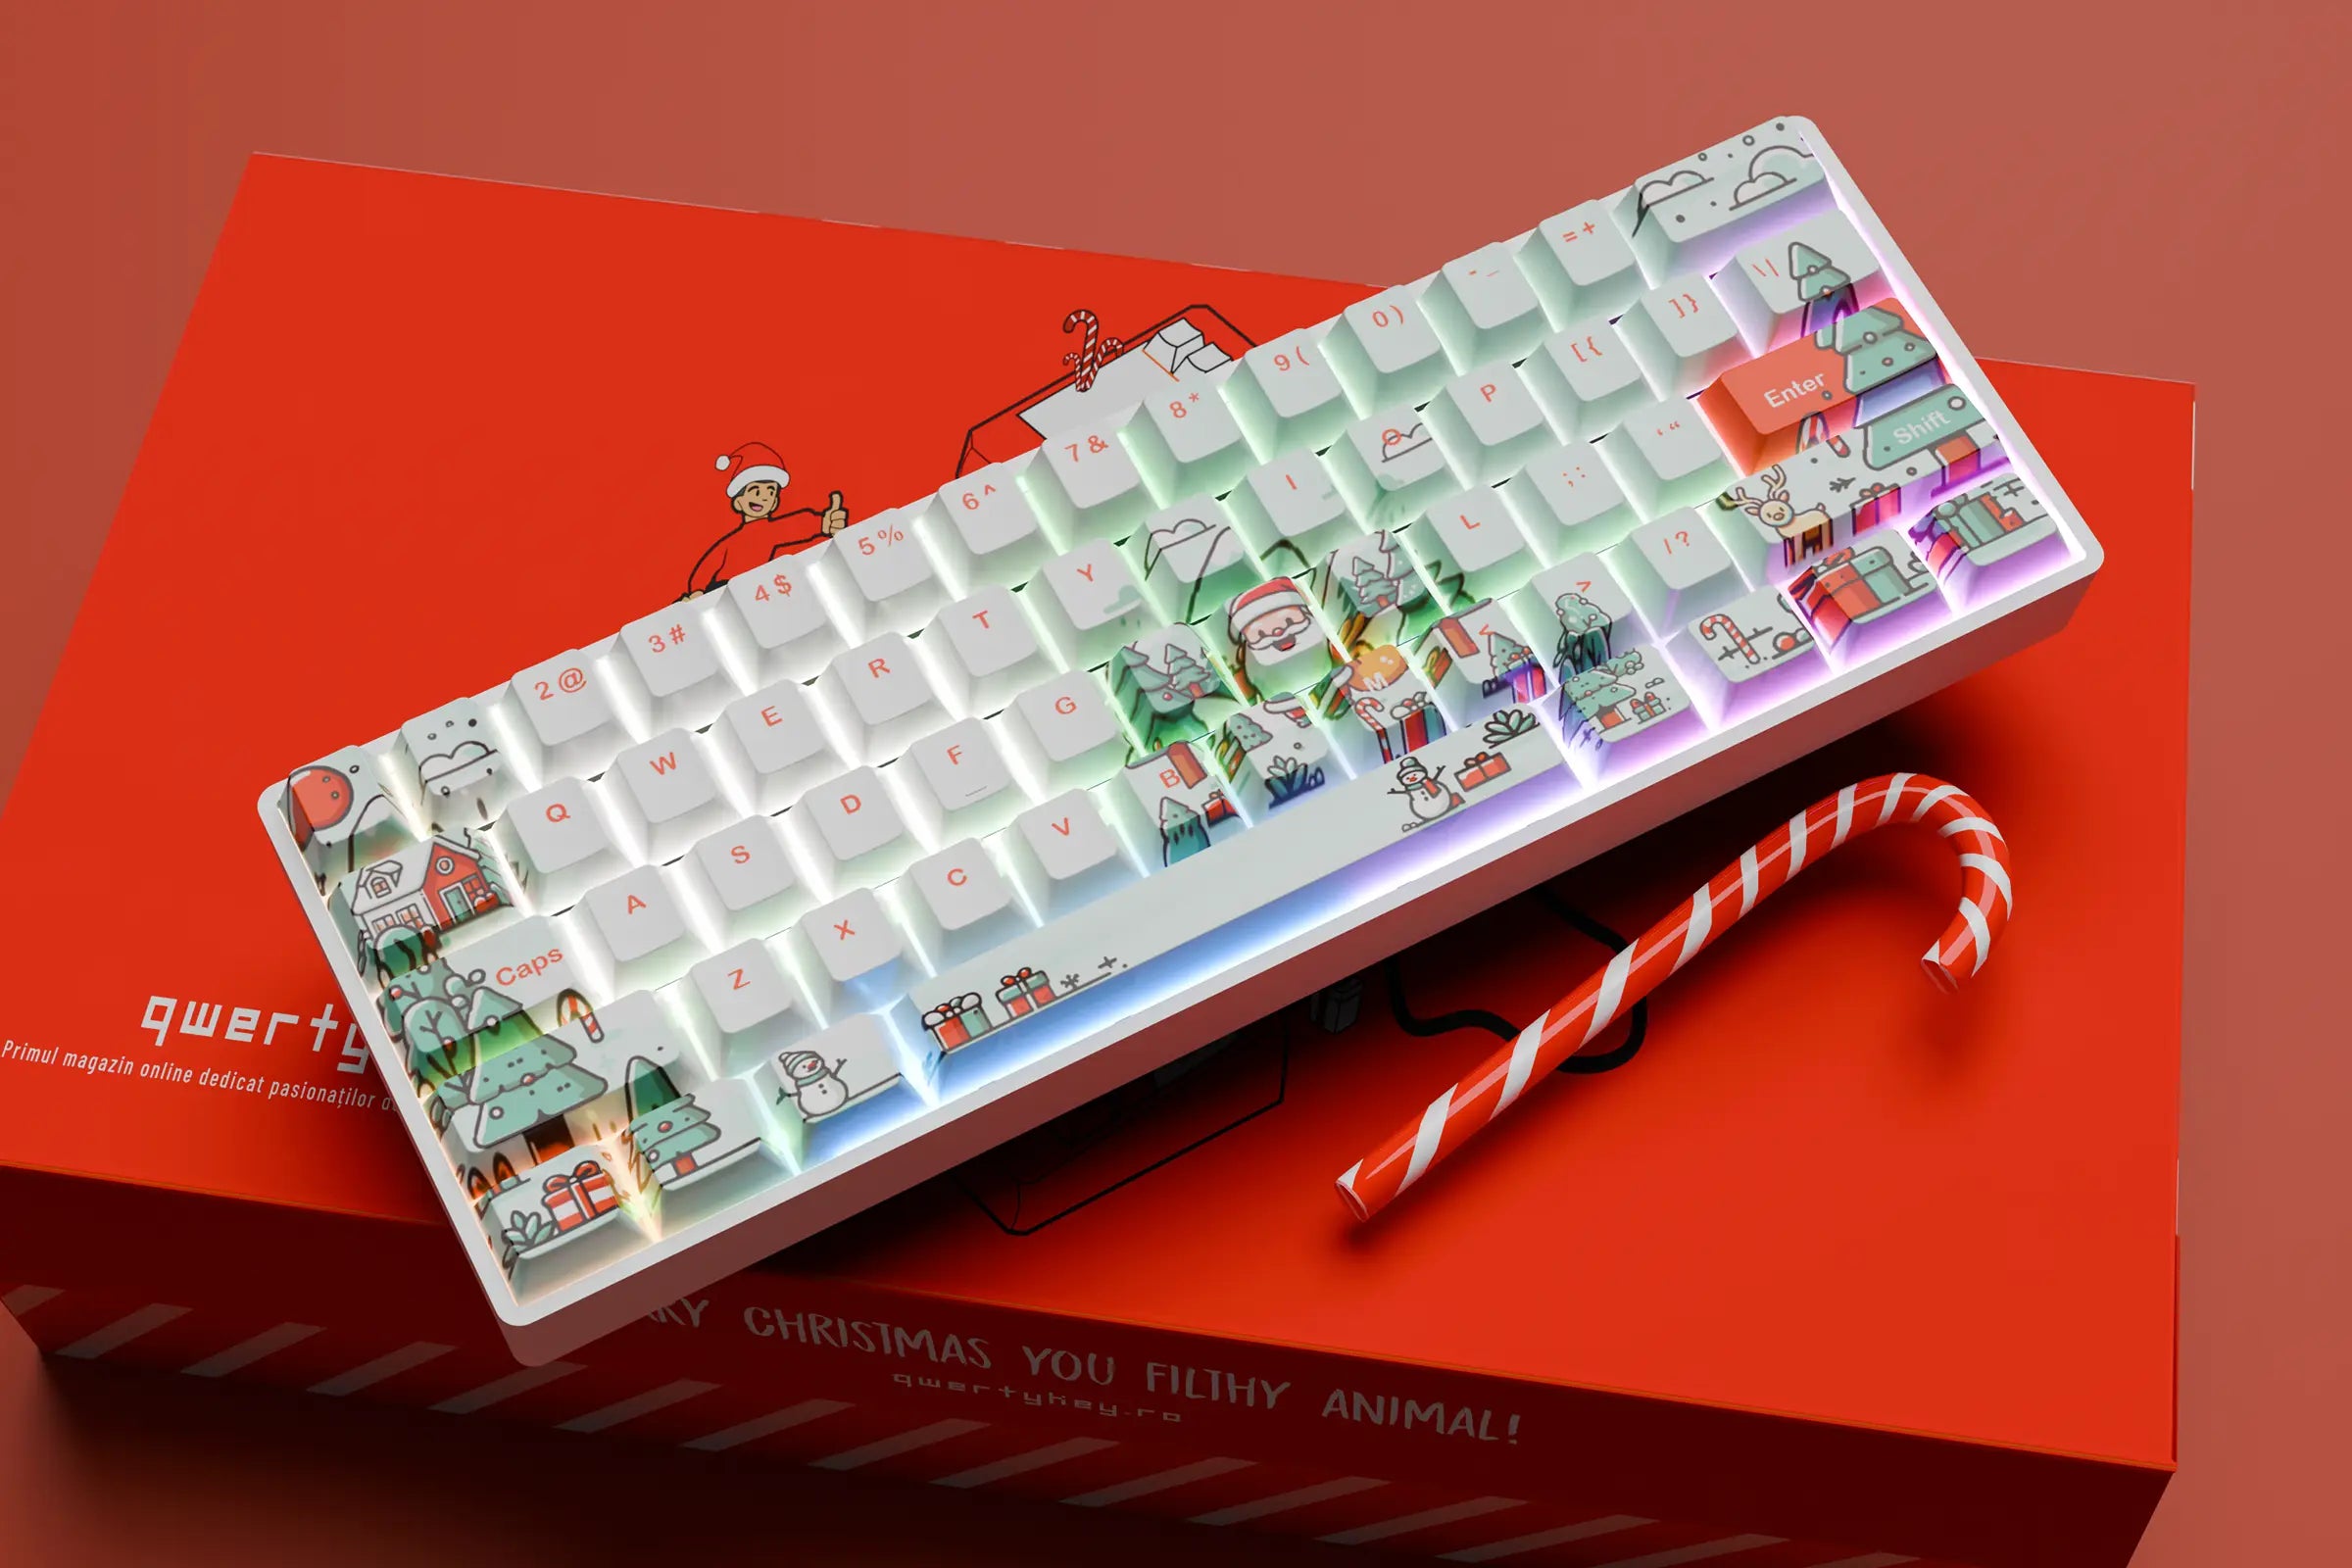 QwertyKey Santa Hotswap Mechanische Weihnachts-Gaming-Tastatur